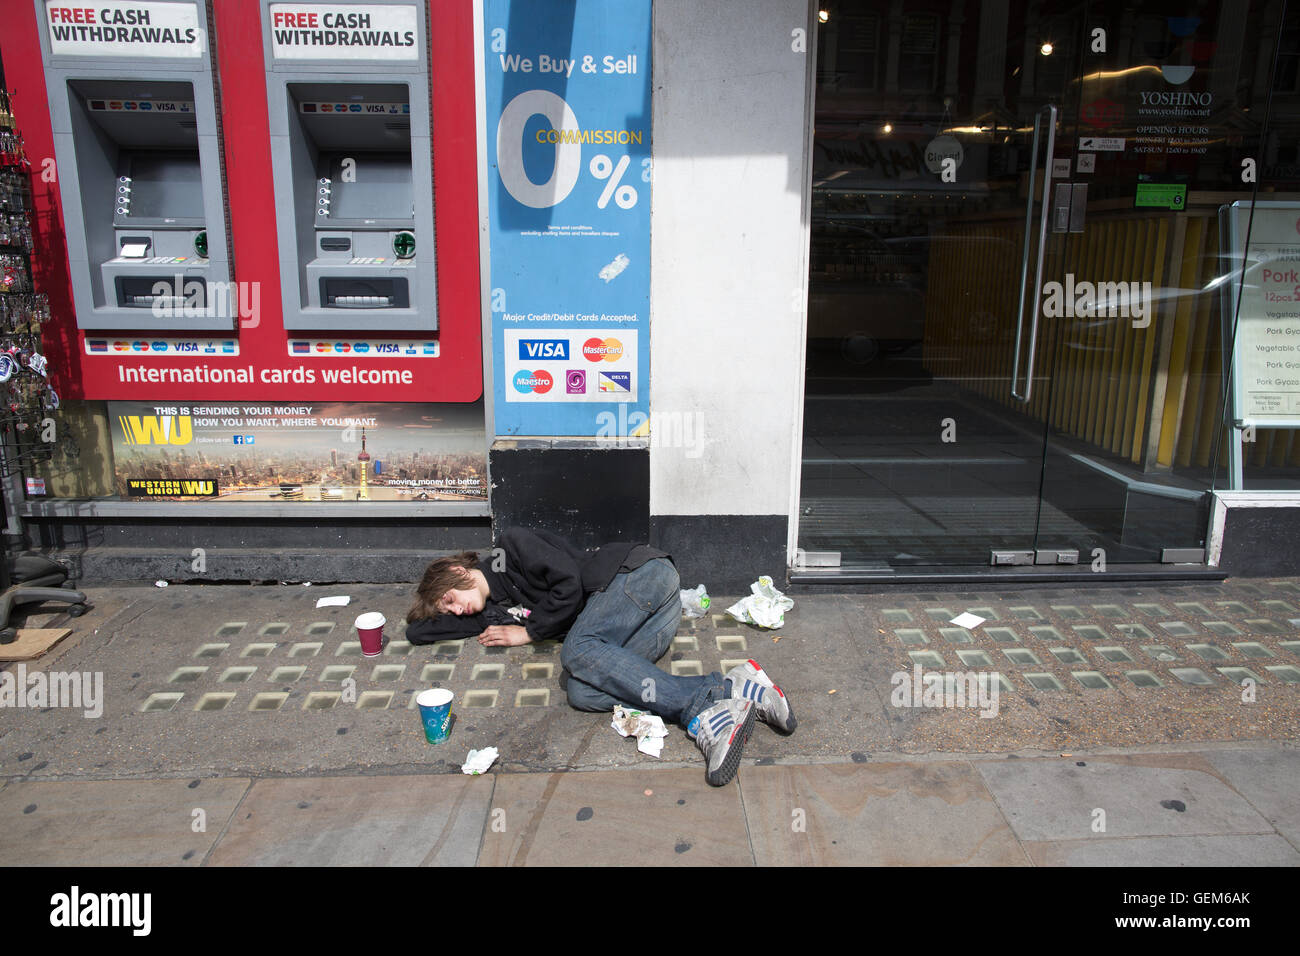 Inconsciente drogadicto en las calles del West End de Londres, el 28% de los hombres que viven en las calles de Londres son heroinómanos. Foto de stock